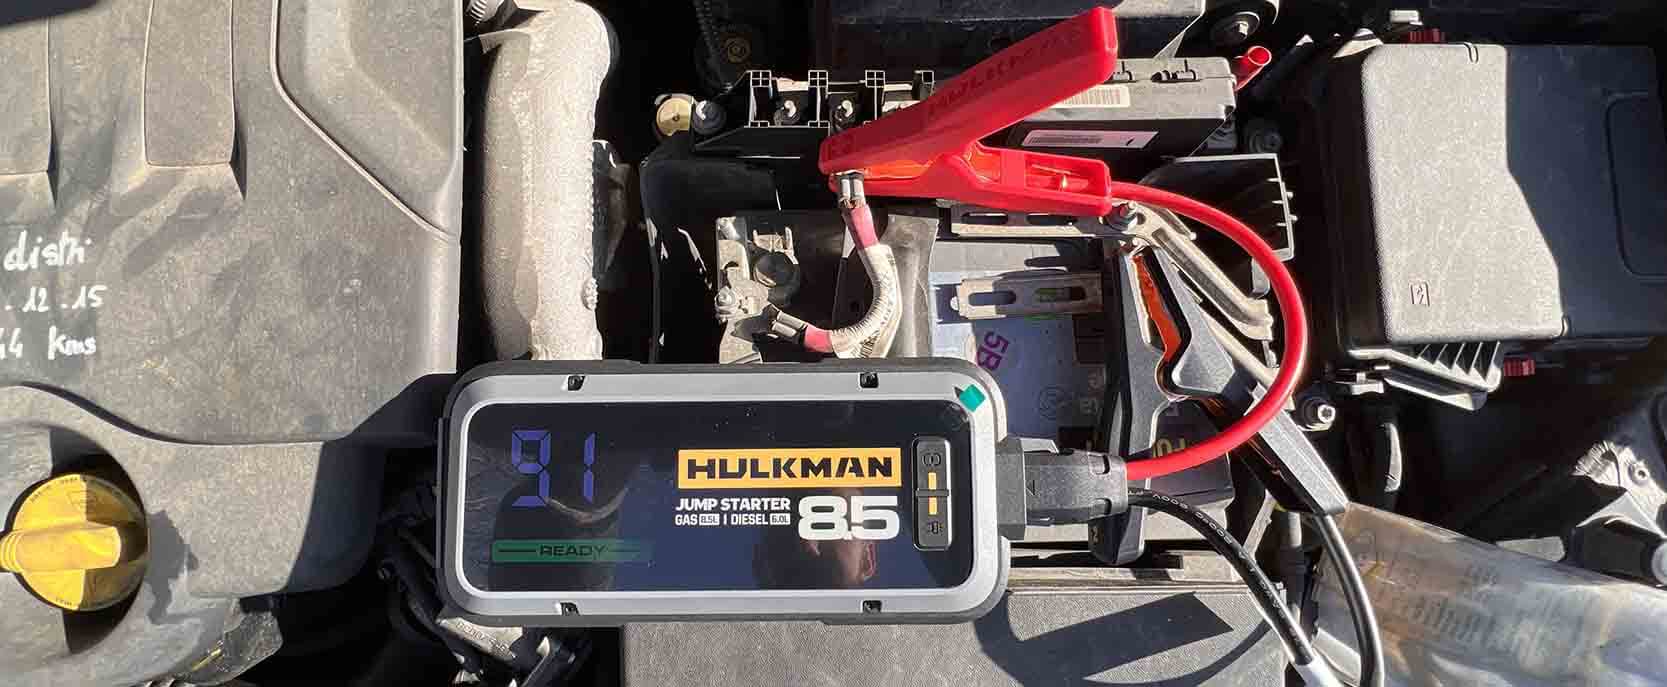 Test et avis du booster de batterie HULKMAN ALPHA 85